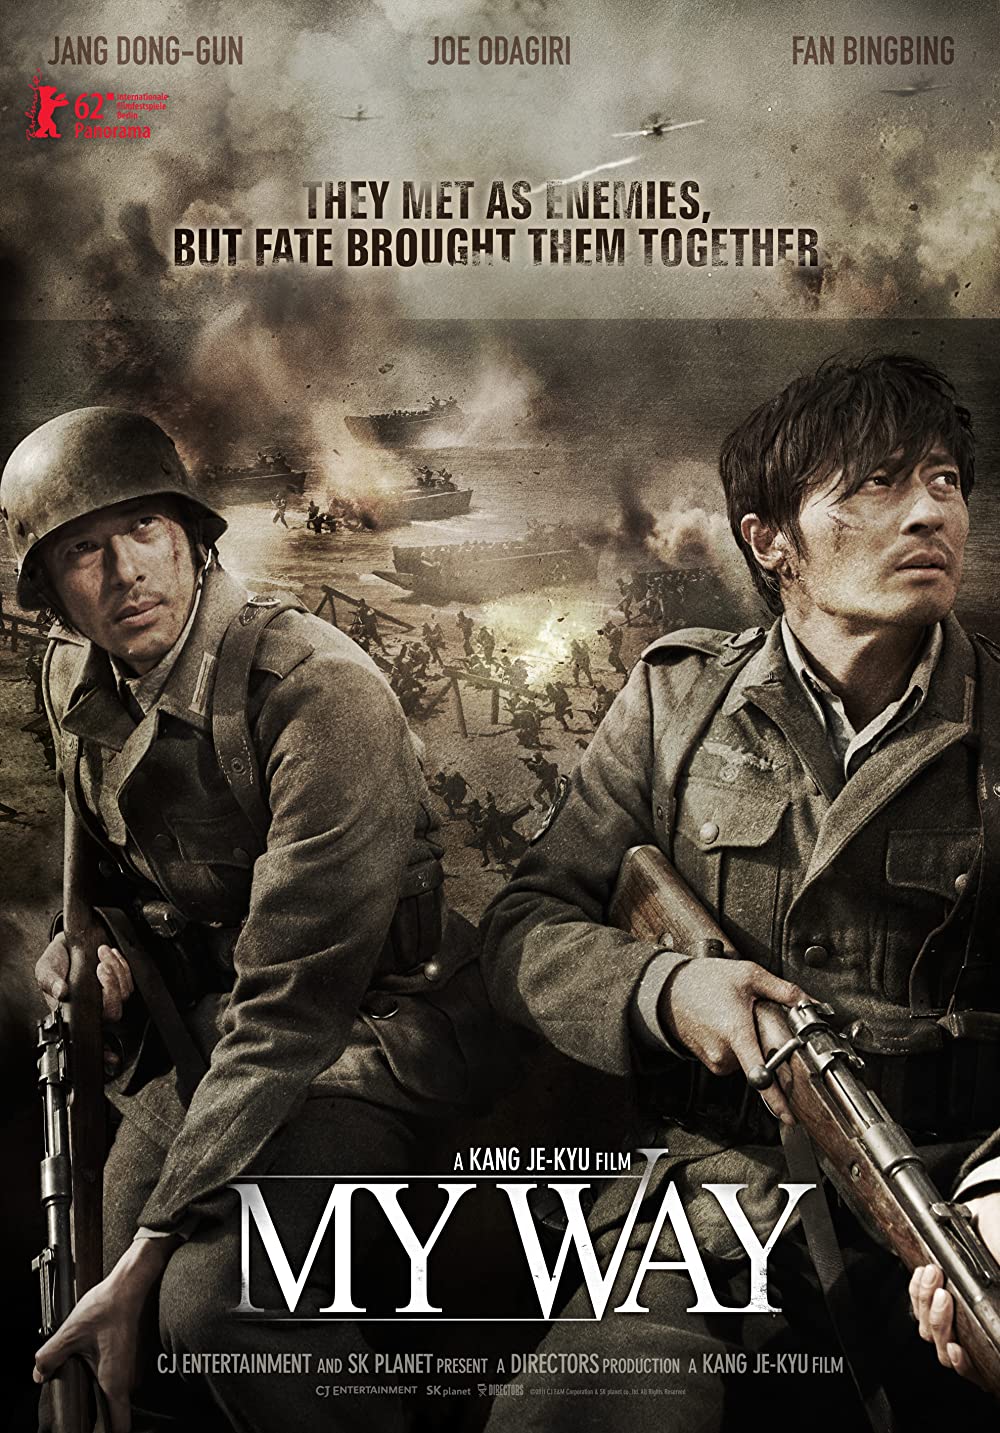 11 Film Korea bertema perang terbaik, kental nuansa patriotisme